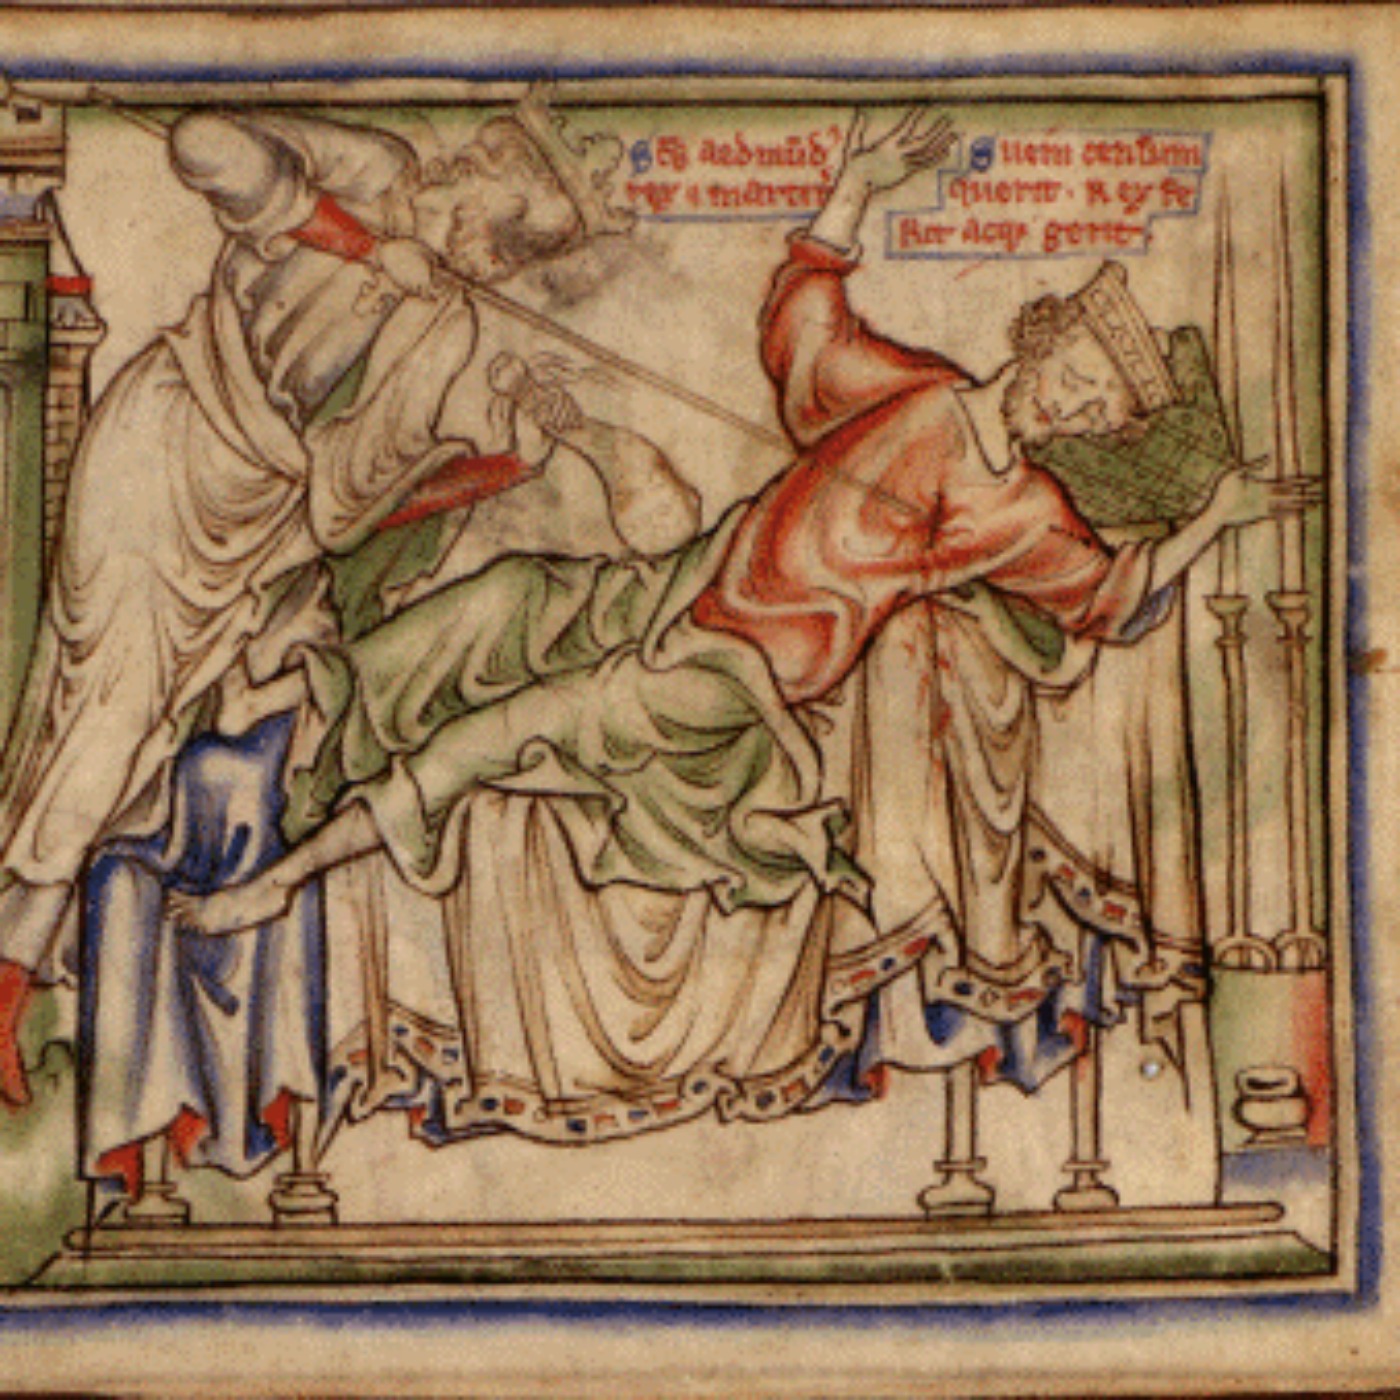 1.25 - 15  Æthelred, Forkbeard and Misery